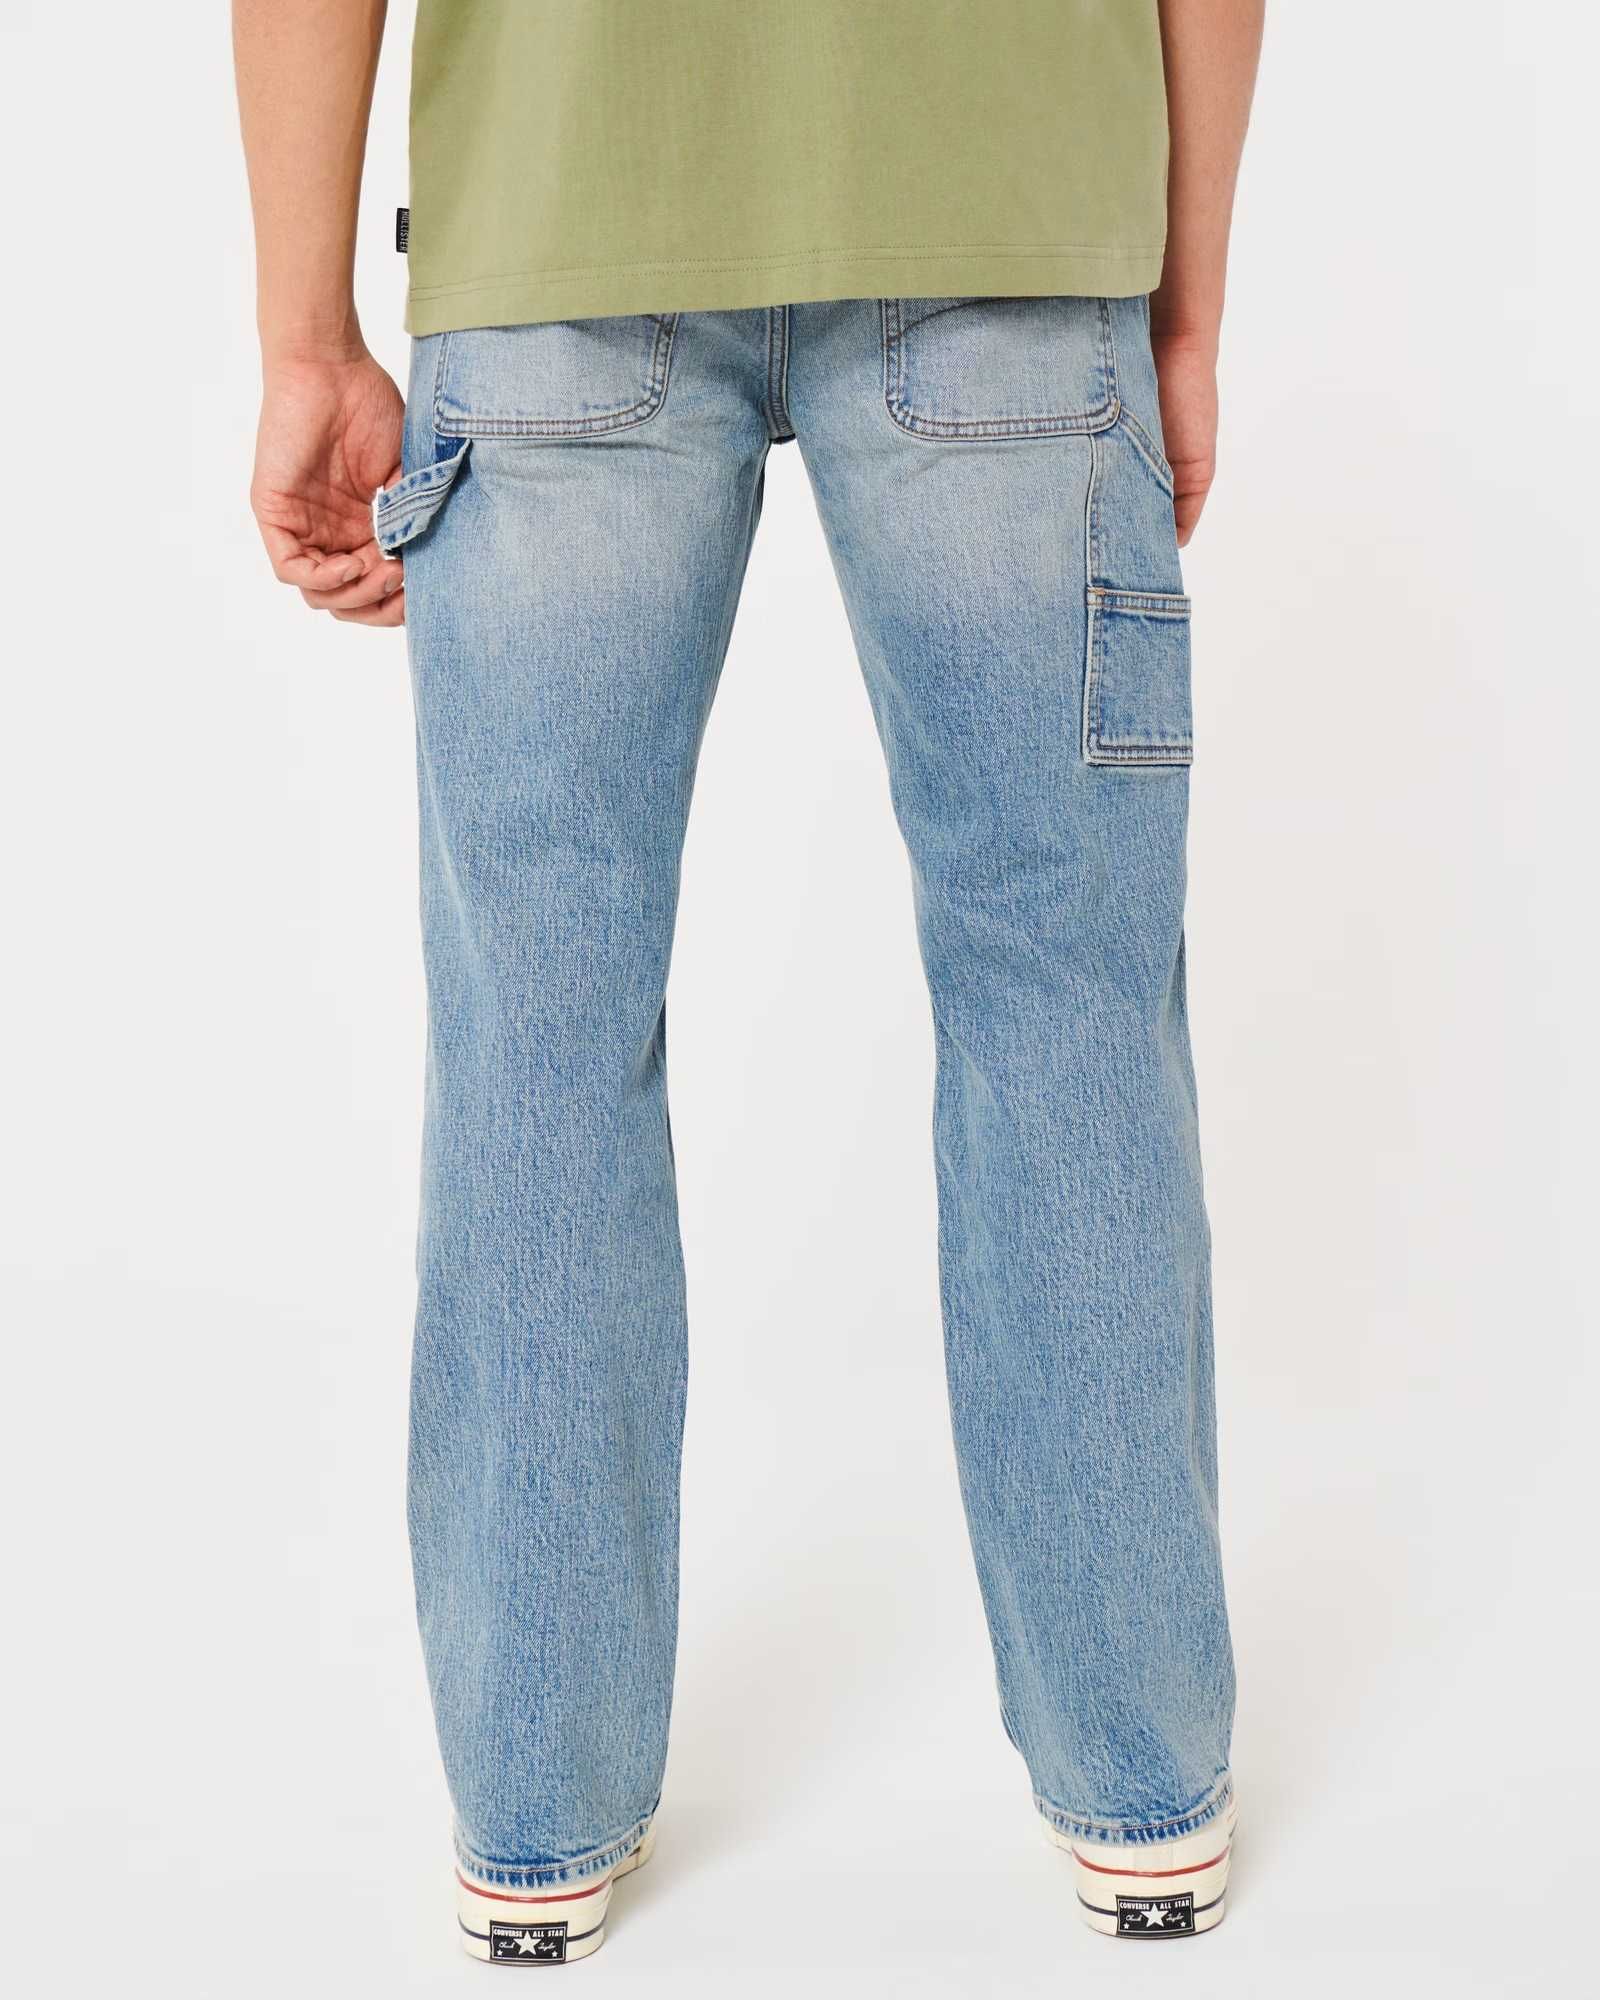 Классические джинсы Hollister в стиле CARPENTER  (Abercrombie & Fitch)